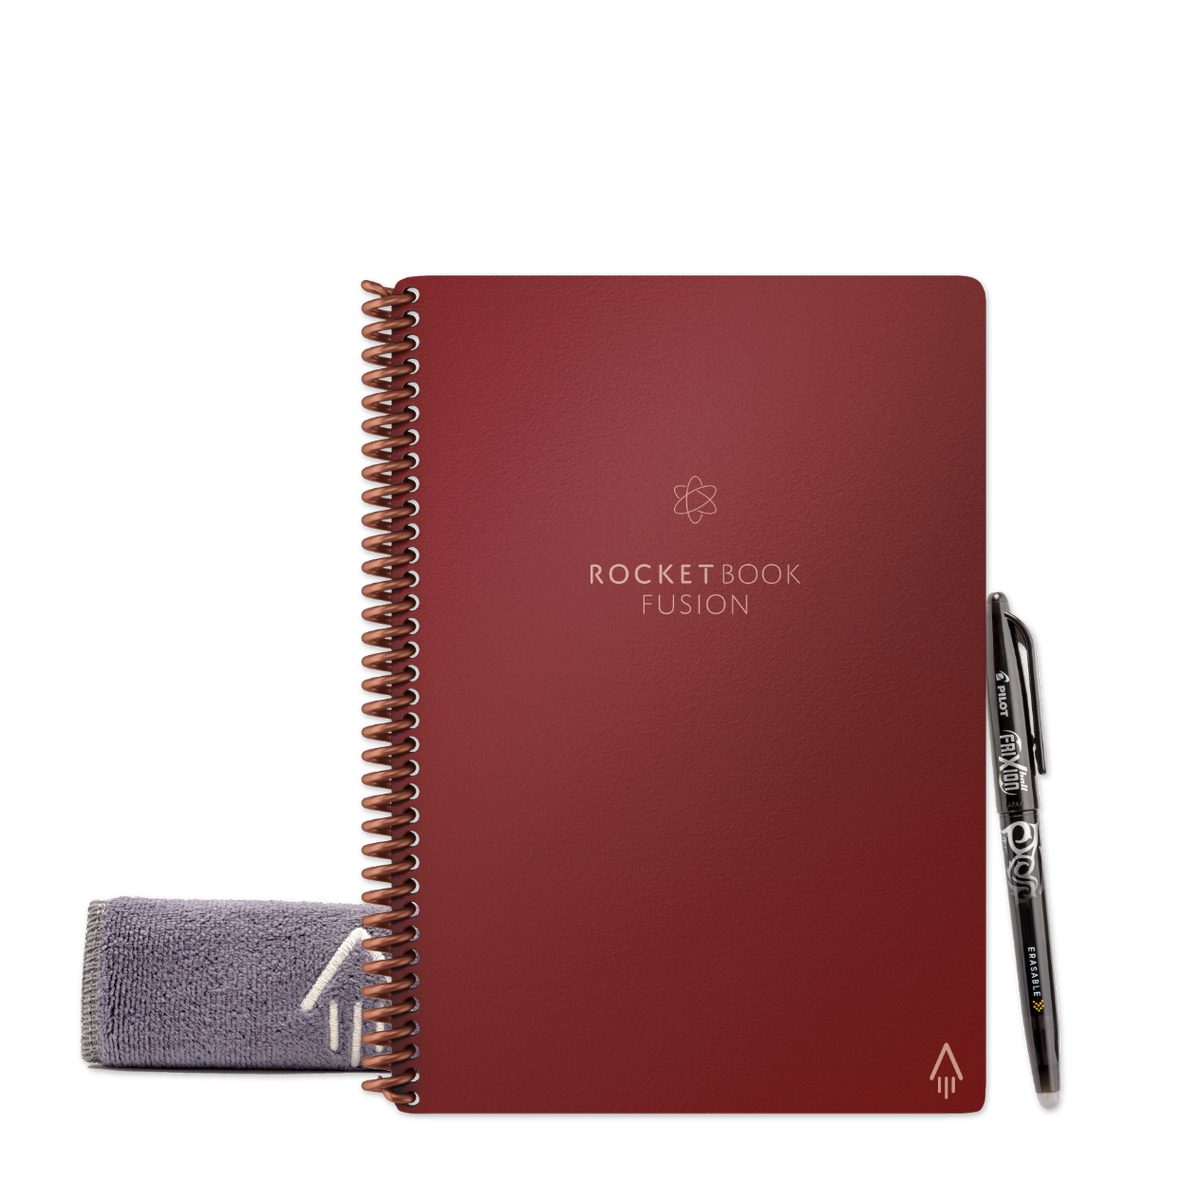 Notizbuch Rocket Notiz- Skizzenbuch Everlast Book Sky, Scarlet - Symbol Rocketbook mit FUSION und Tagging App-Anbindung und